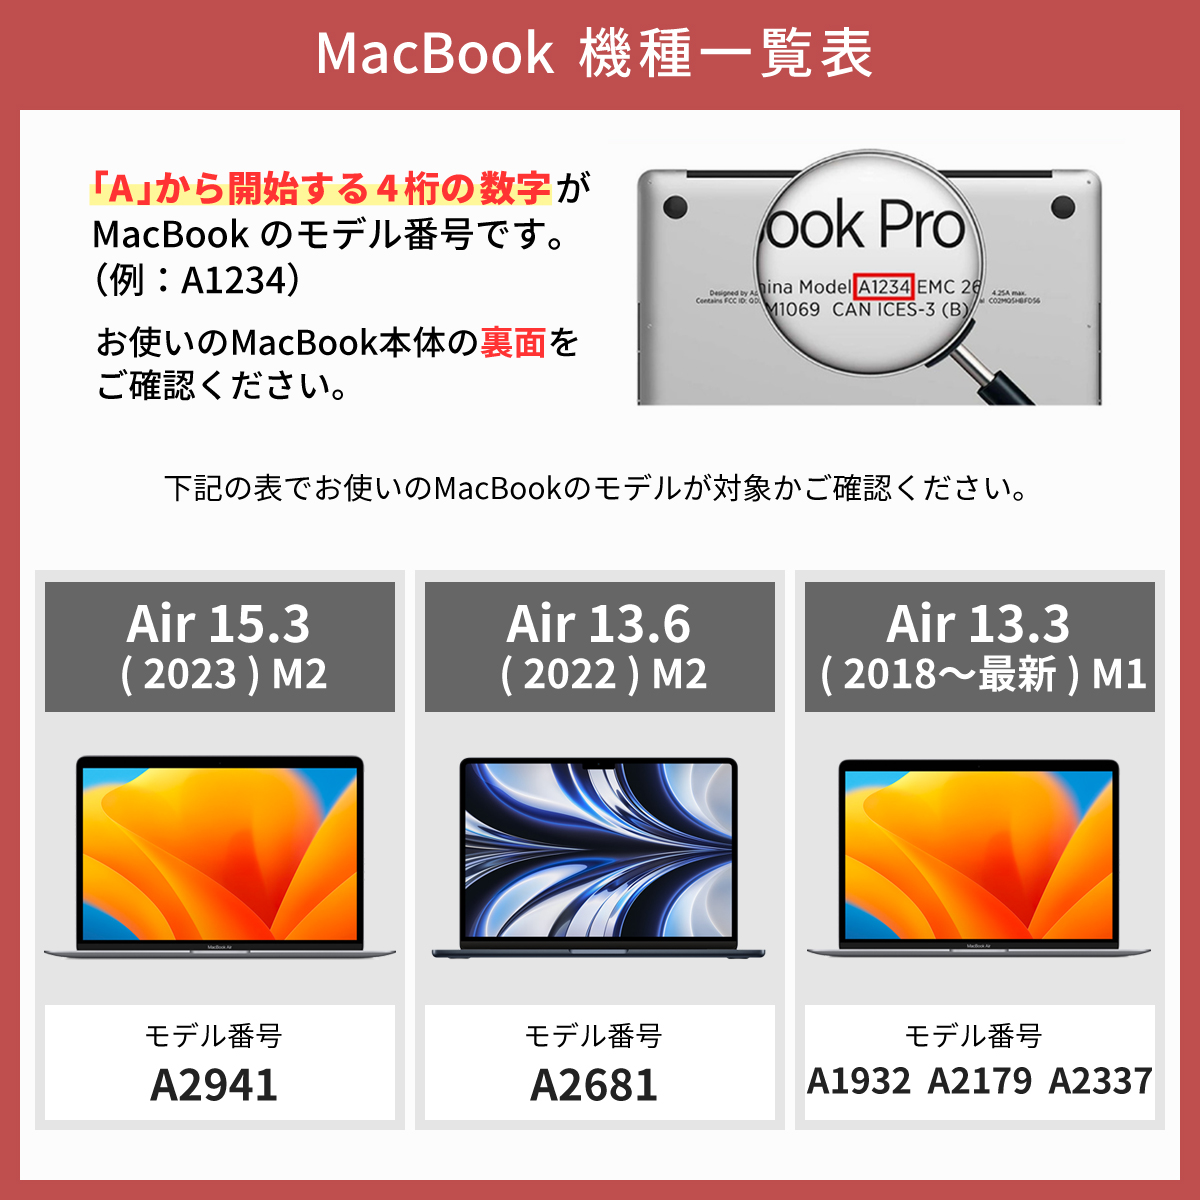 MacBook air pro 全面保護 フィルム mac book 液晶 Mac Book マック